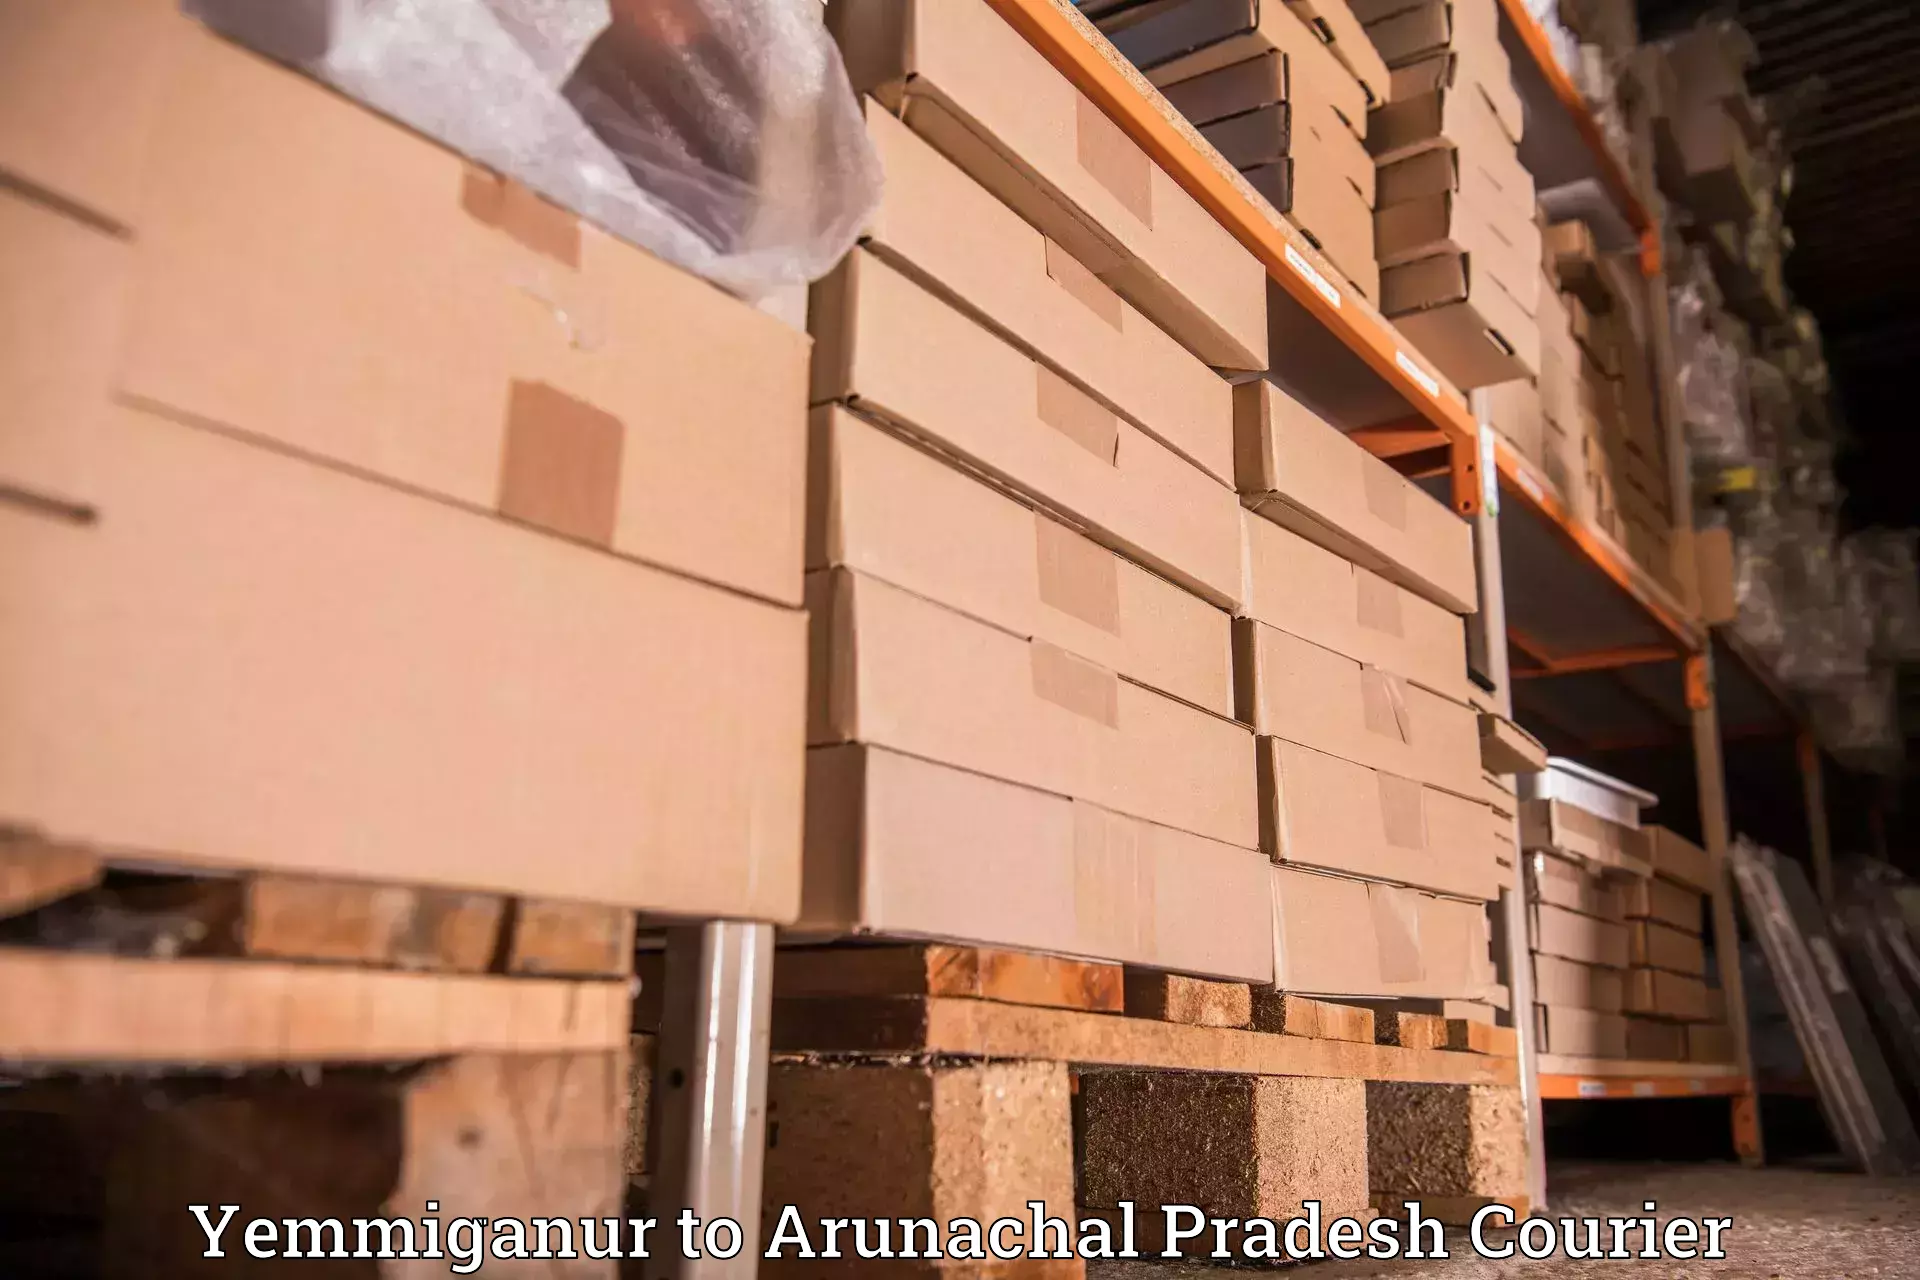 Quick courier services in Yemmiganur to Arunachal Pradesh